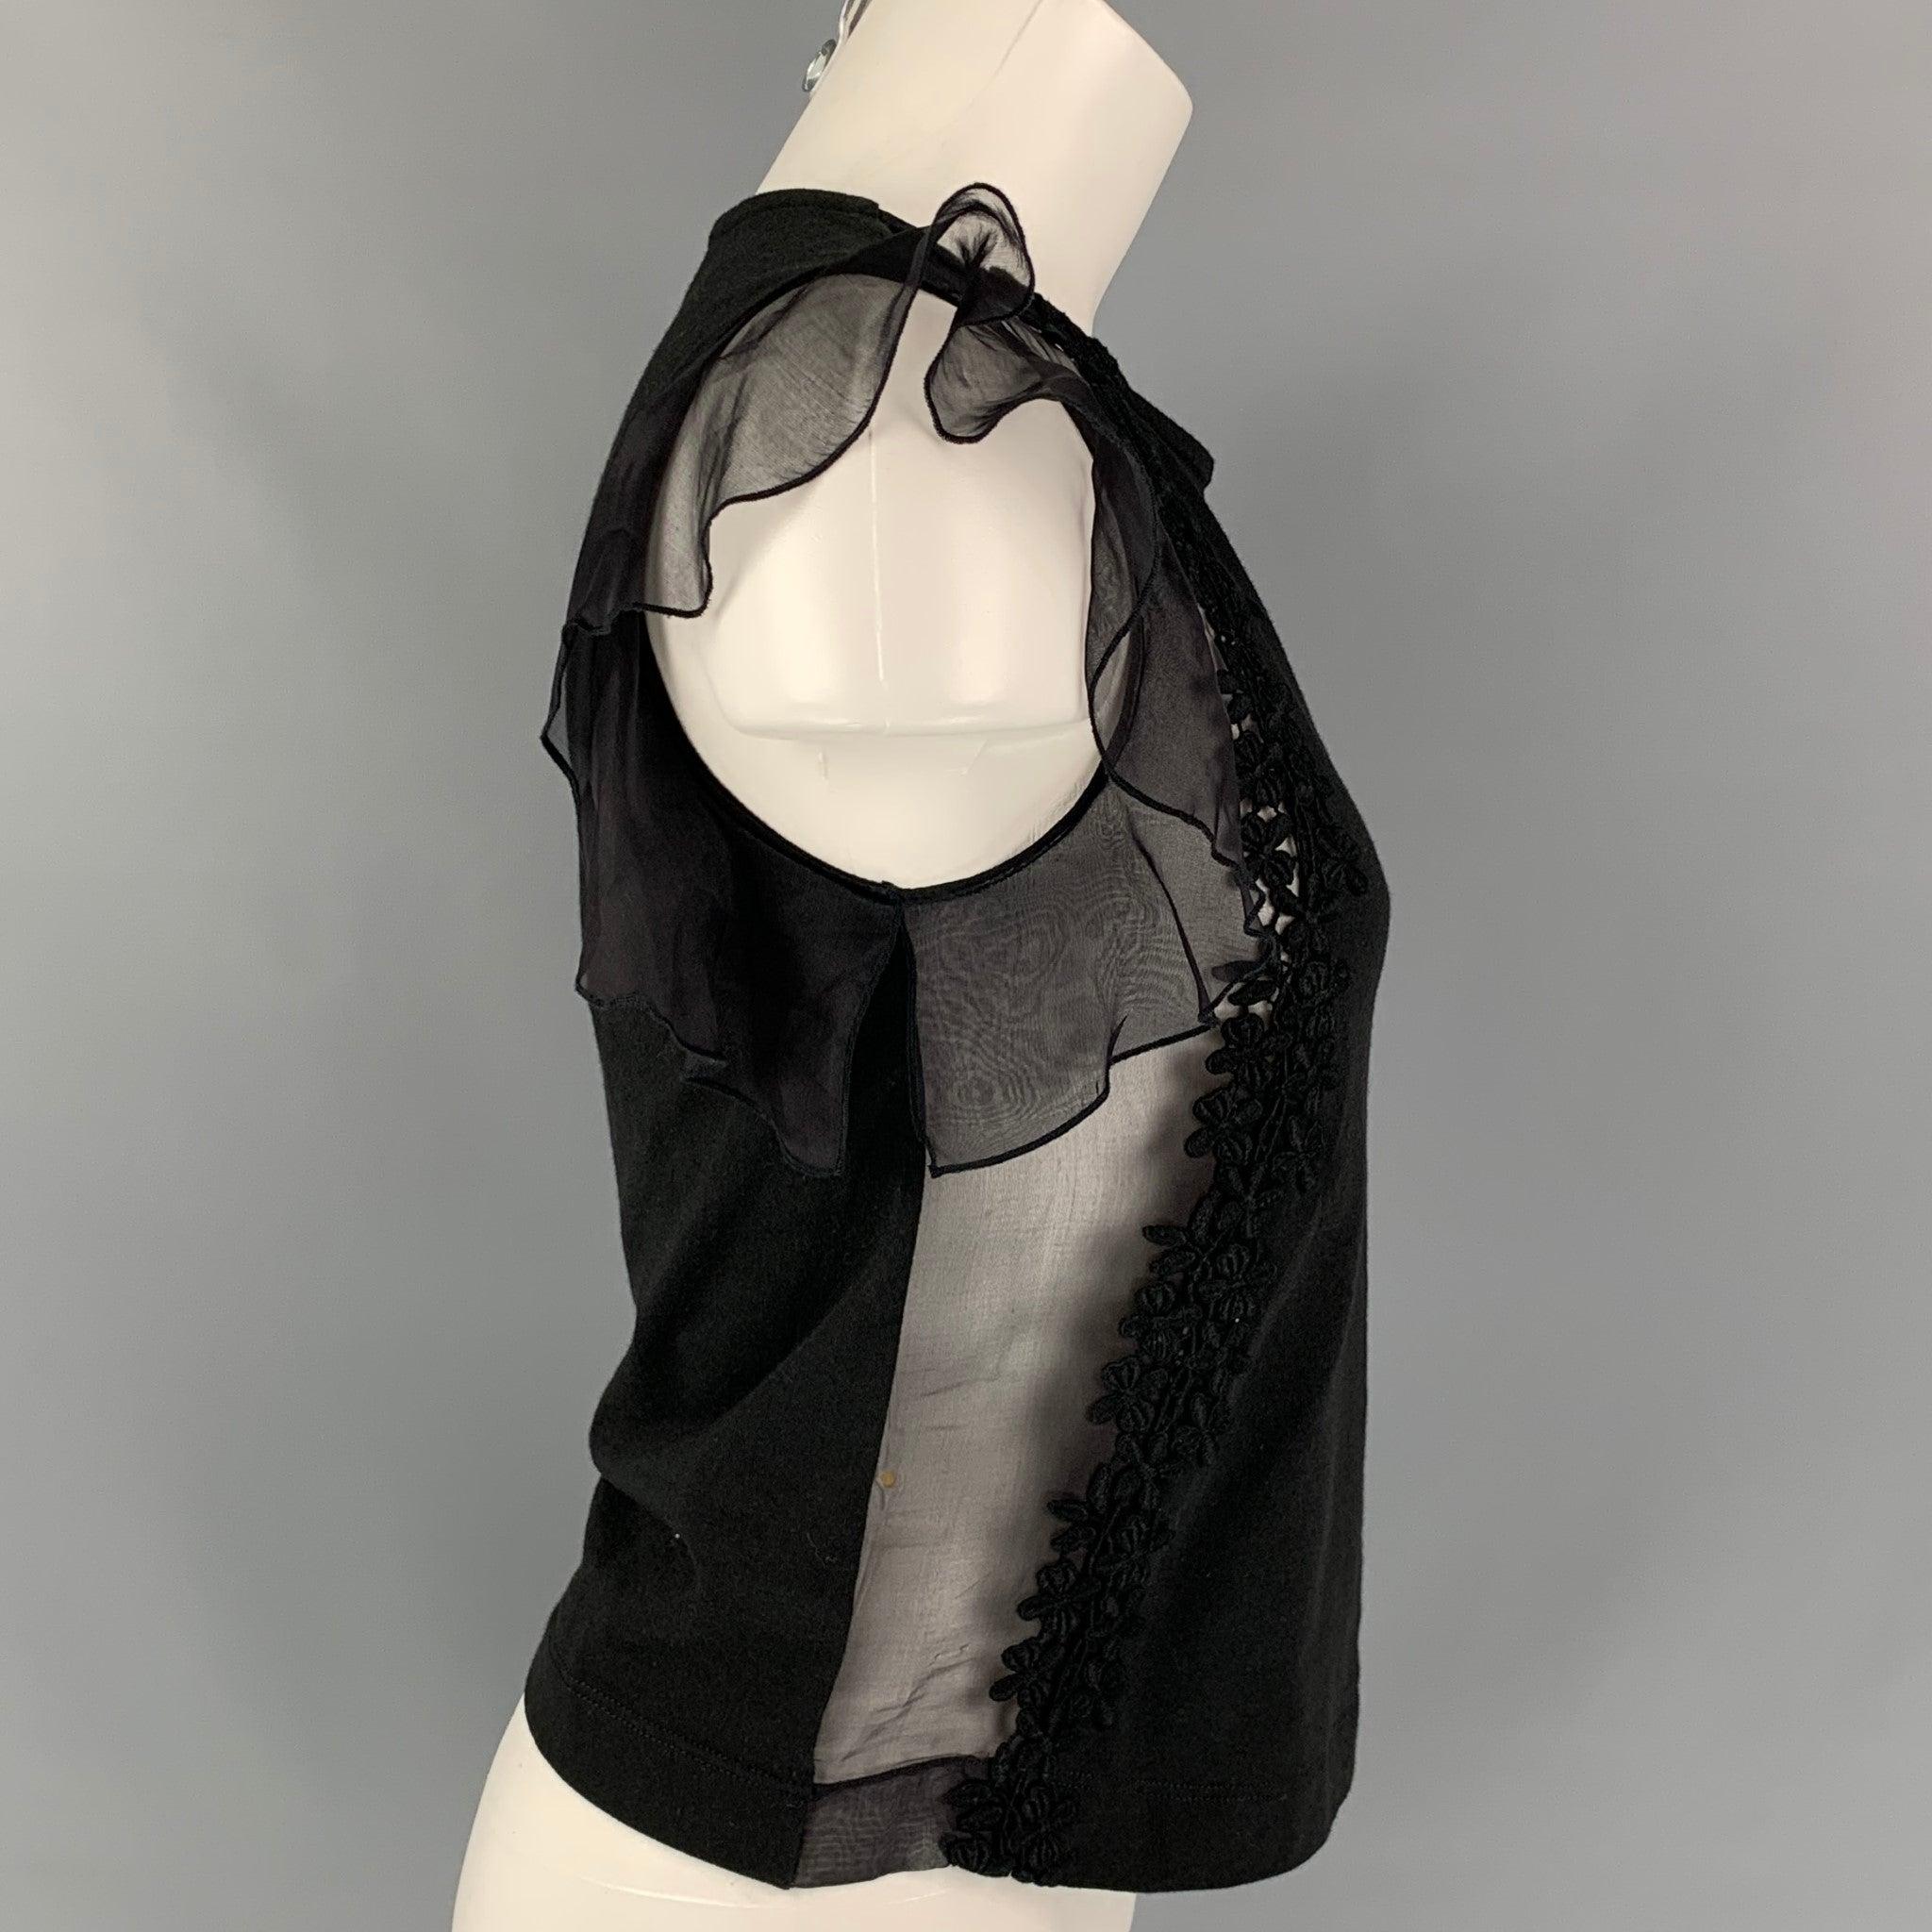 Le haut de robe GIAMBATTISTA VALLI est présenté dans un coton/soie noir avec une bordure en dentelle, des détails brodés, sans manches et une encolure ras du cou. Fabriquées en Italie.
Très bien
Etat d'occasion. 

Marqué :   38/XXS 

Mesures : 
